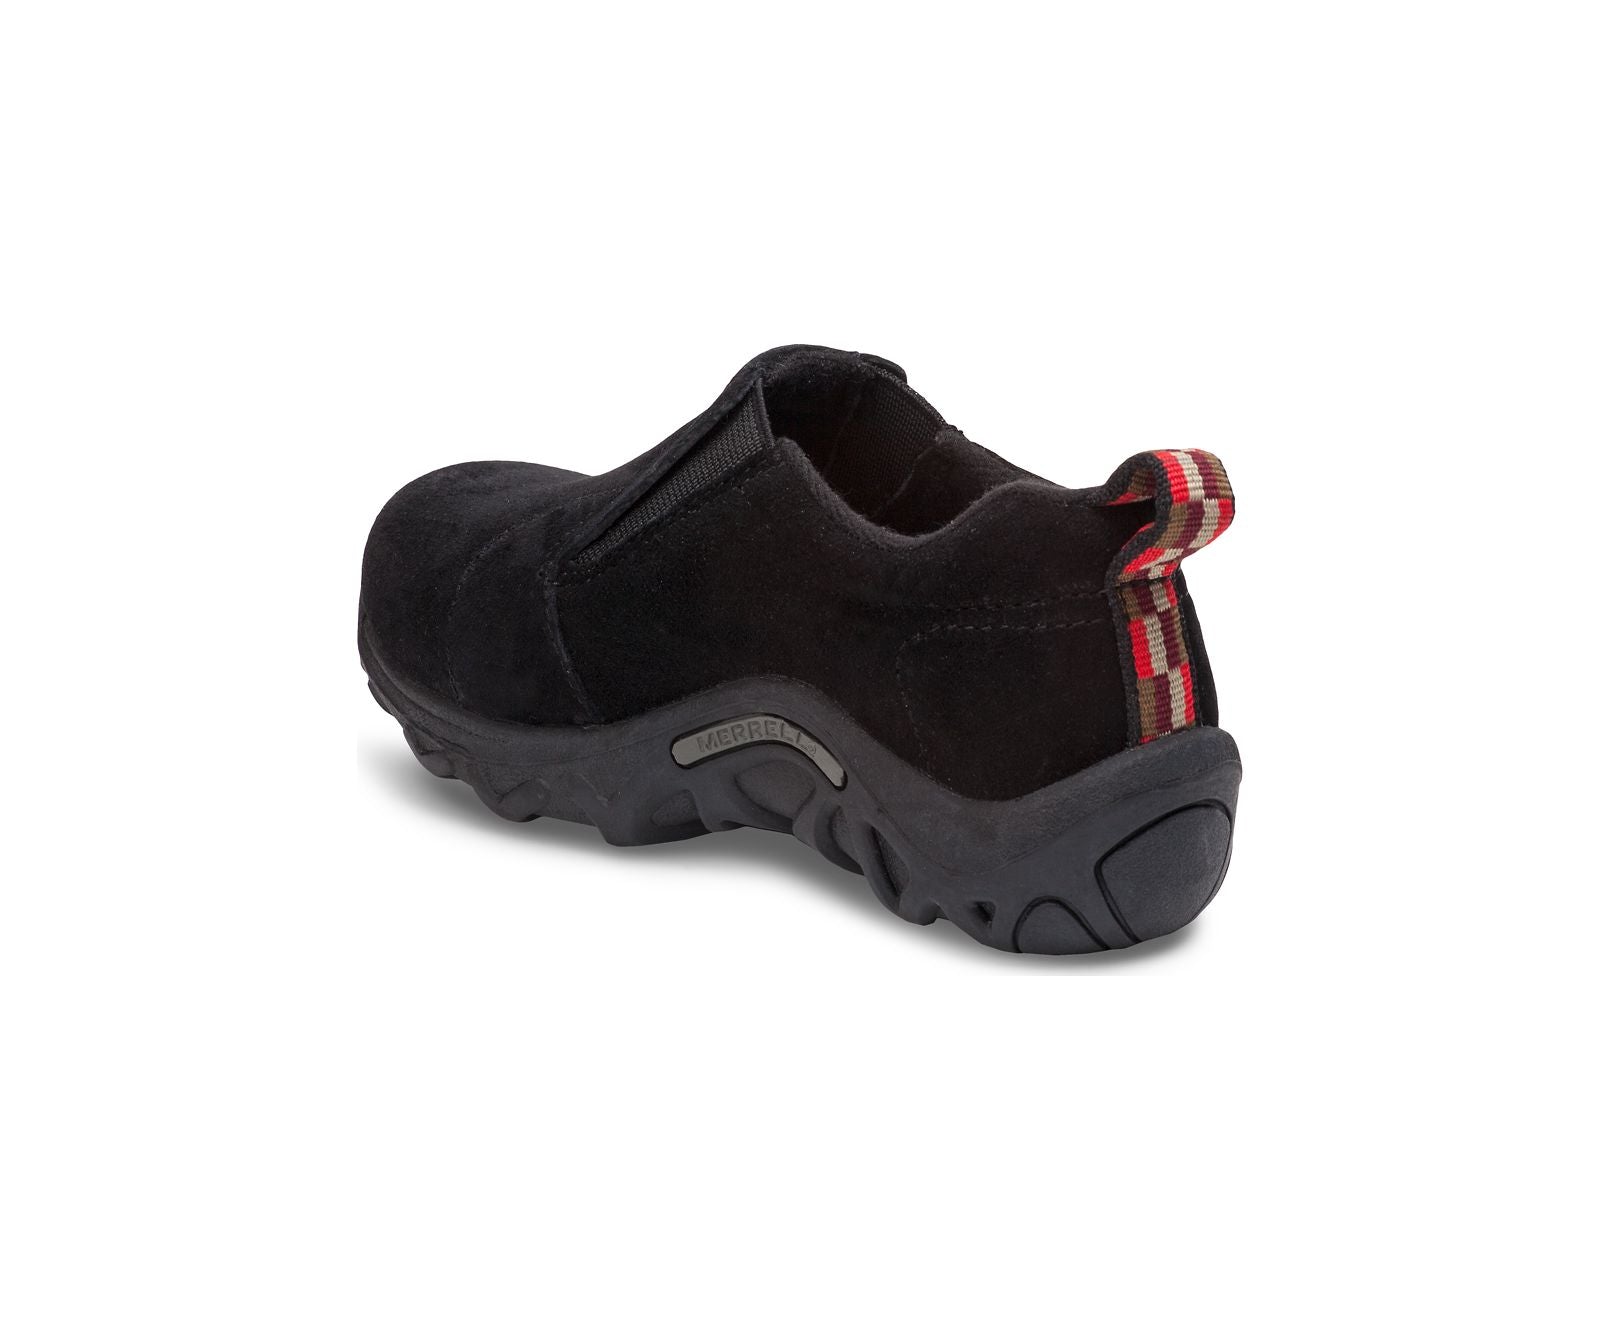 Jungle Moc Slip-on Kids Shoes - Black Suede